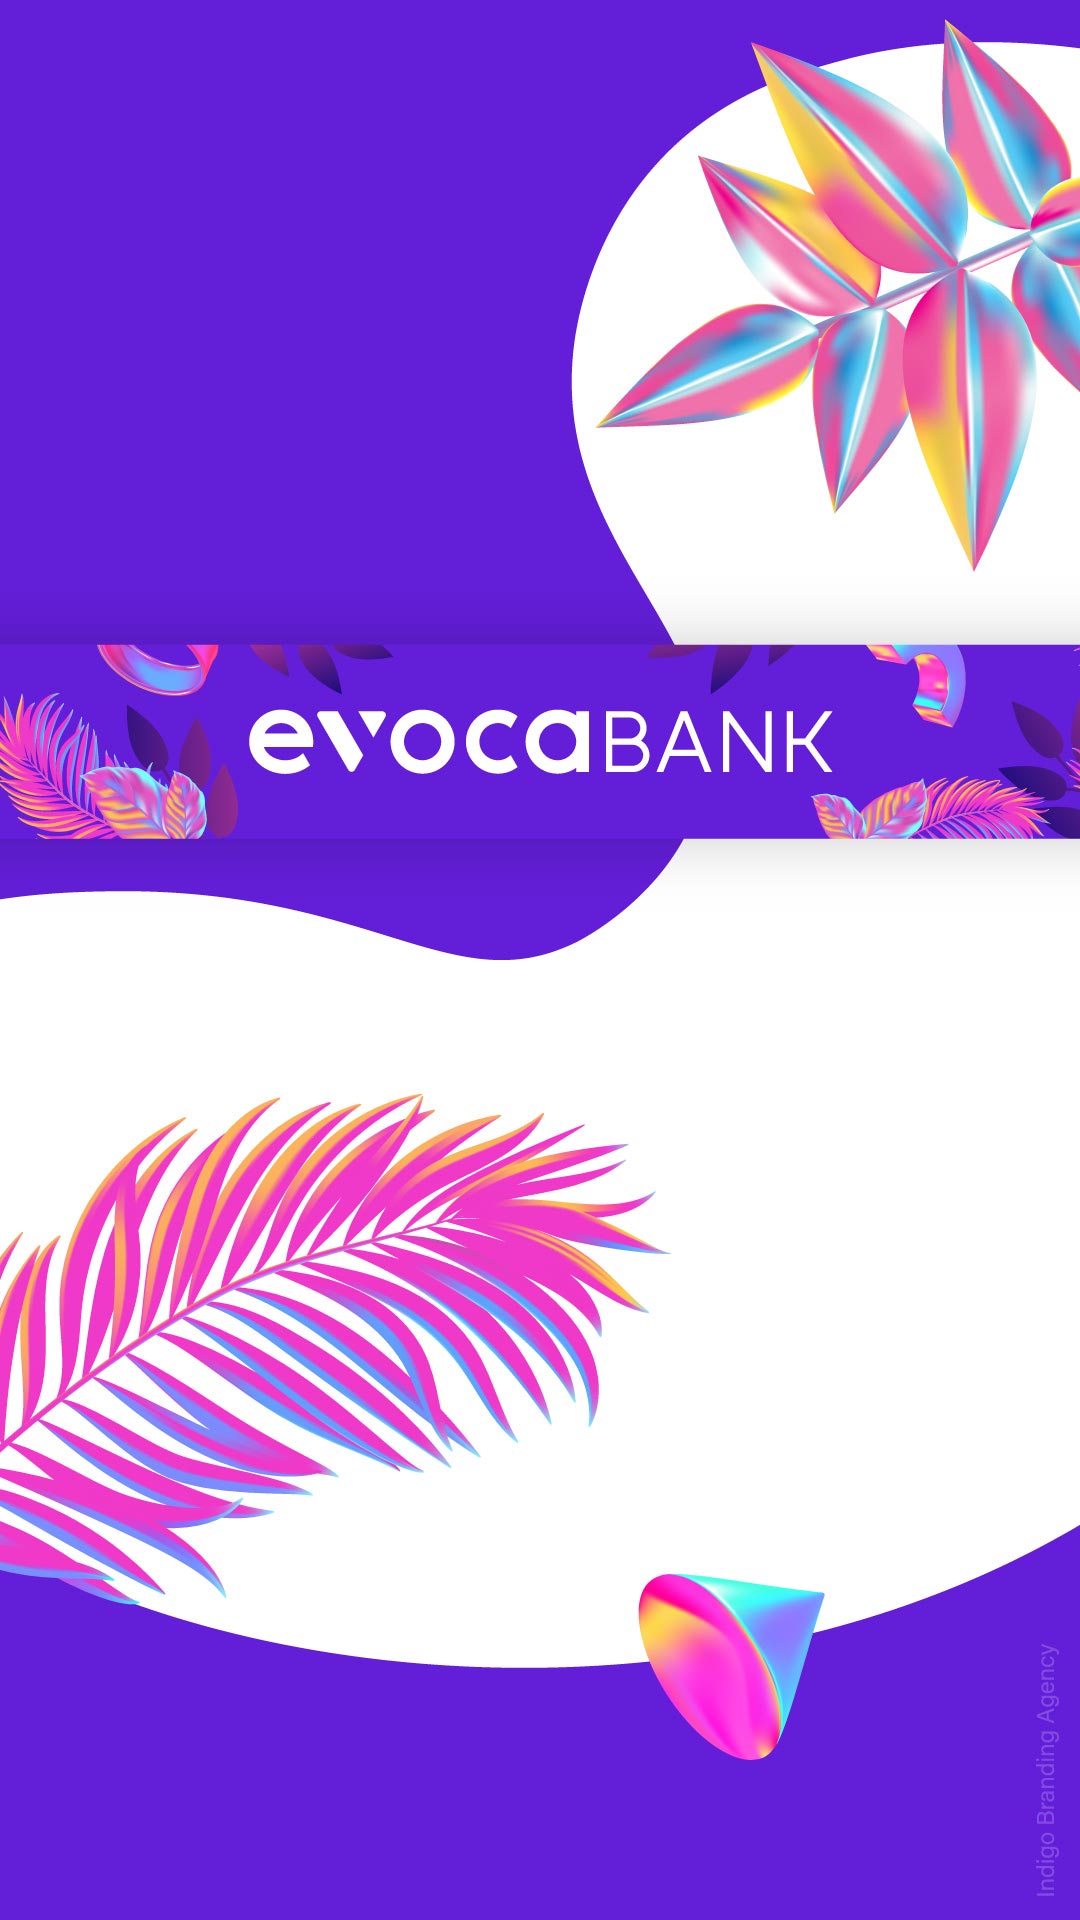 Evocabank ad campaign visual identity design by Indigo branding